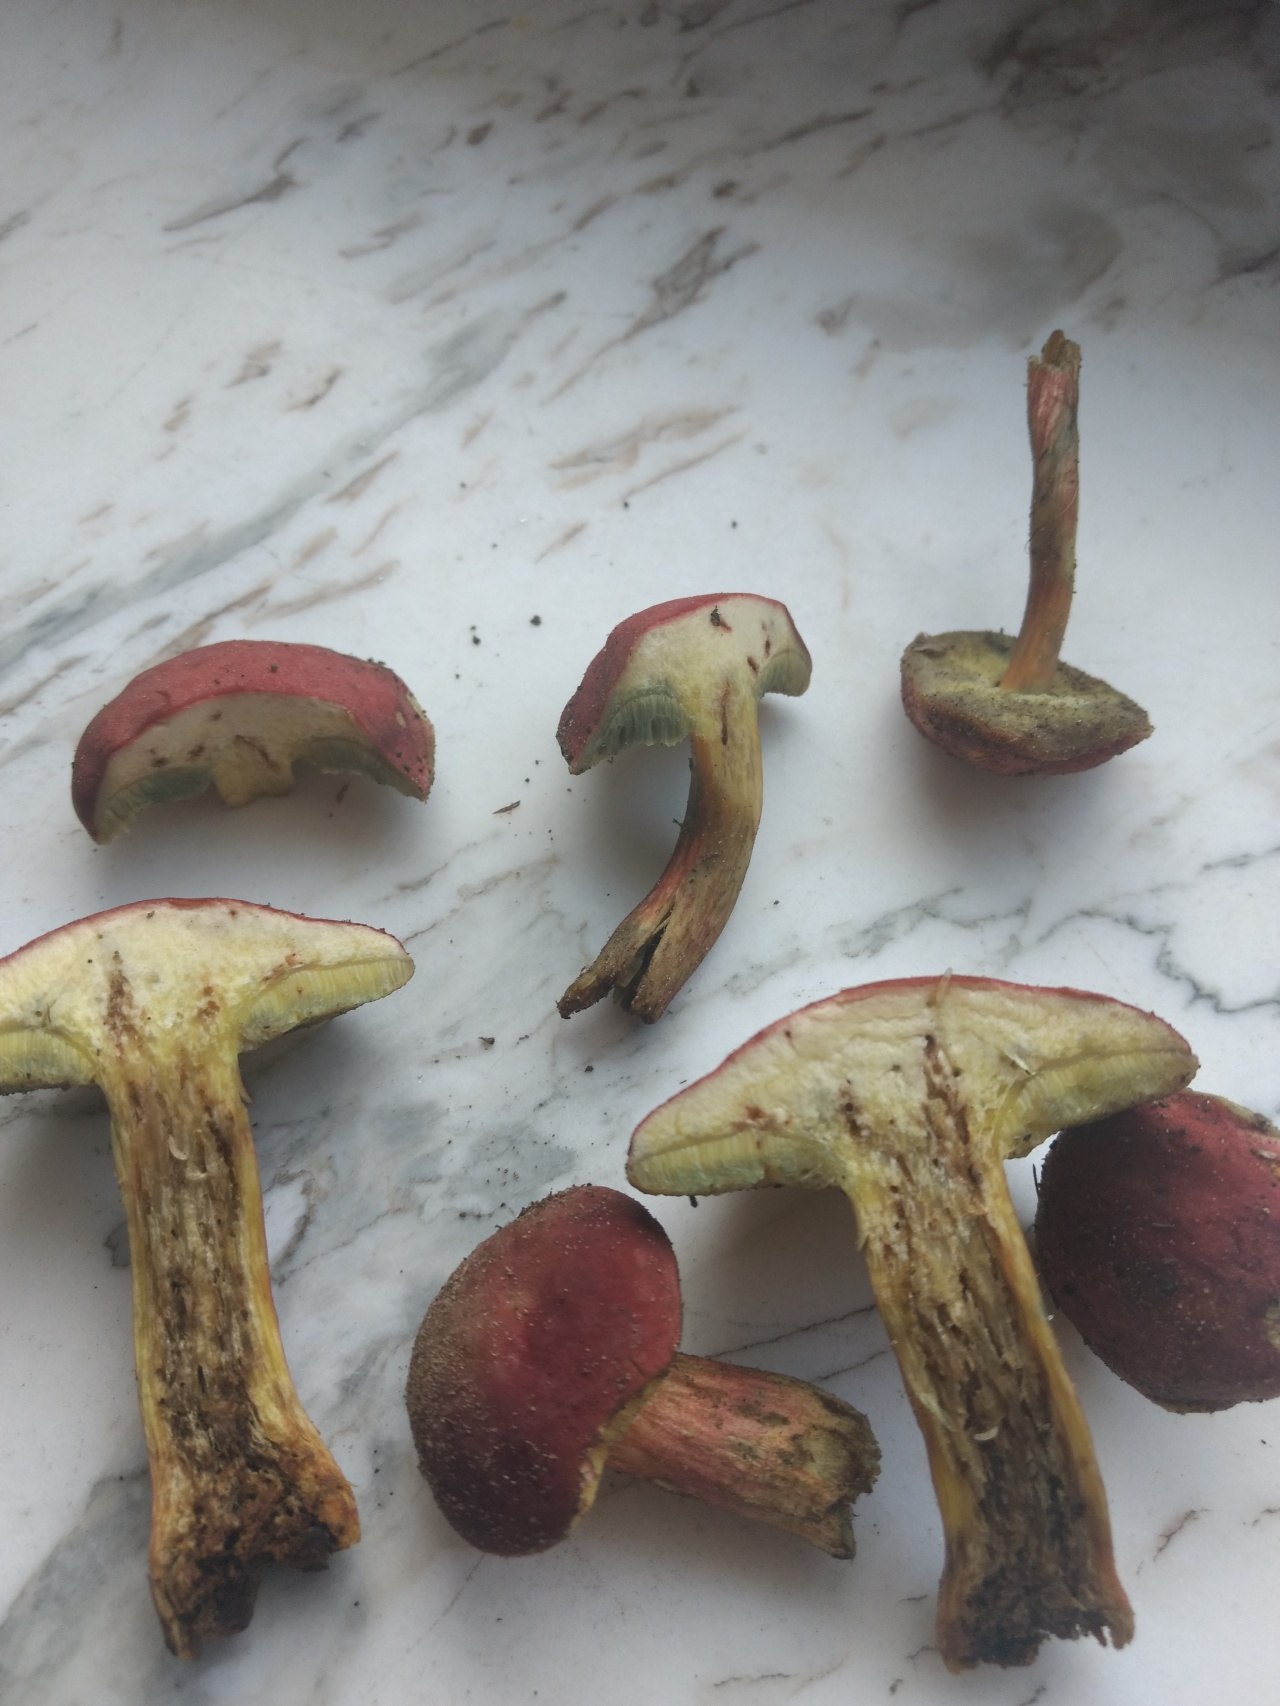 фото съедобных грибов которые синеют на срезе